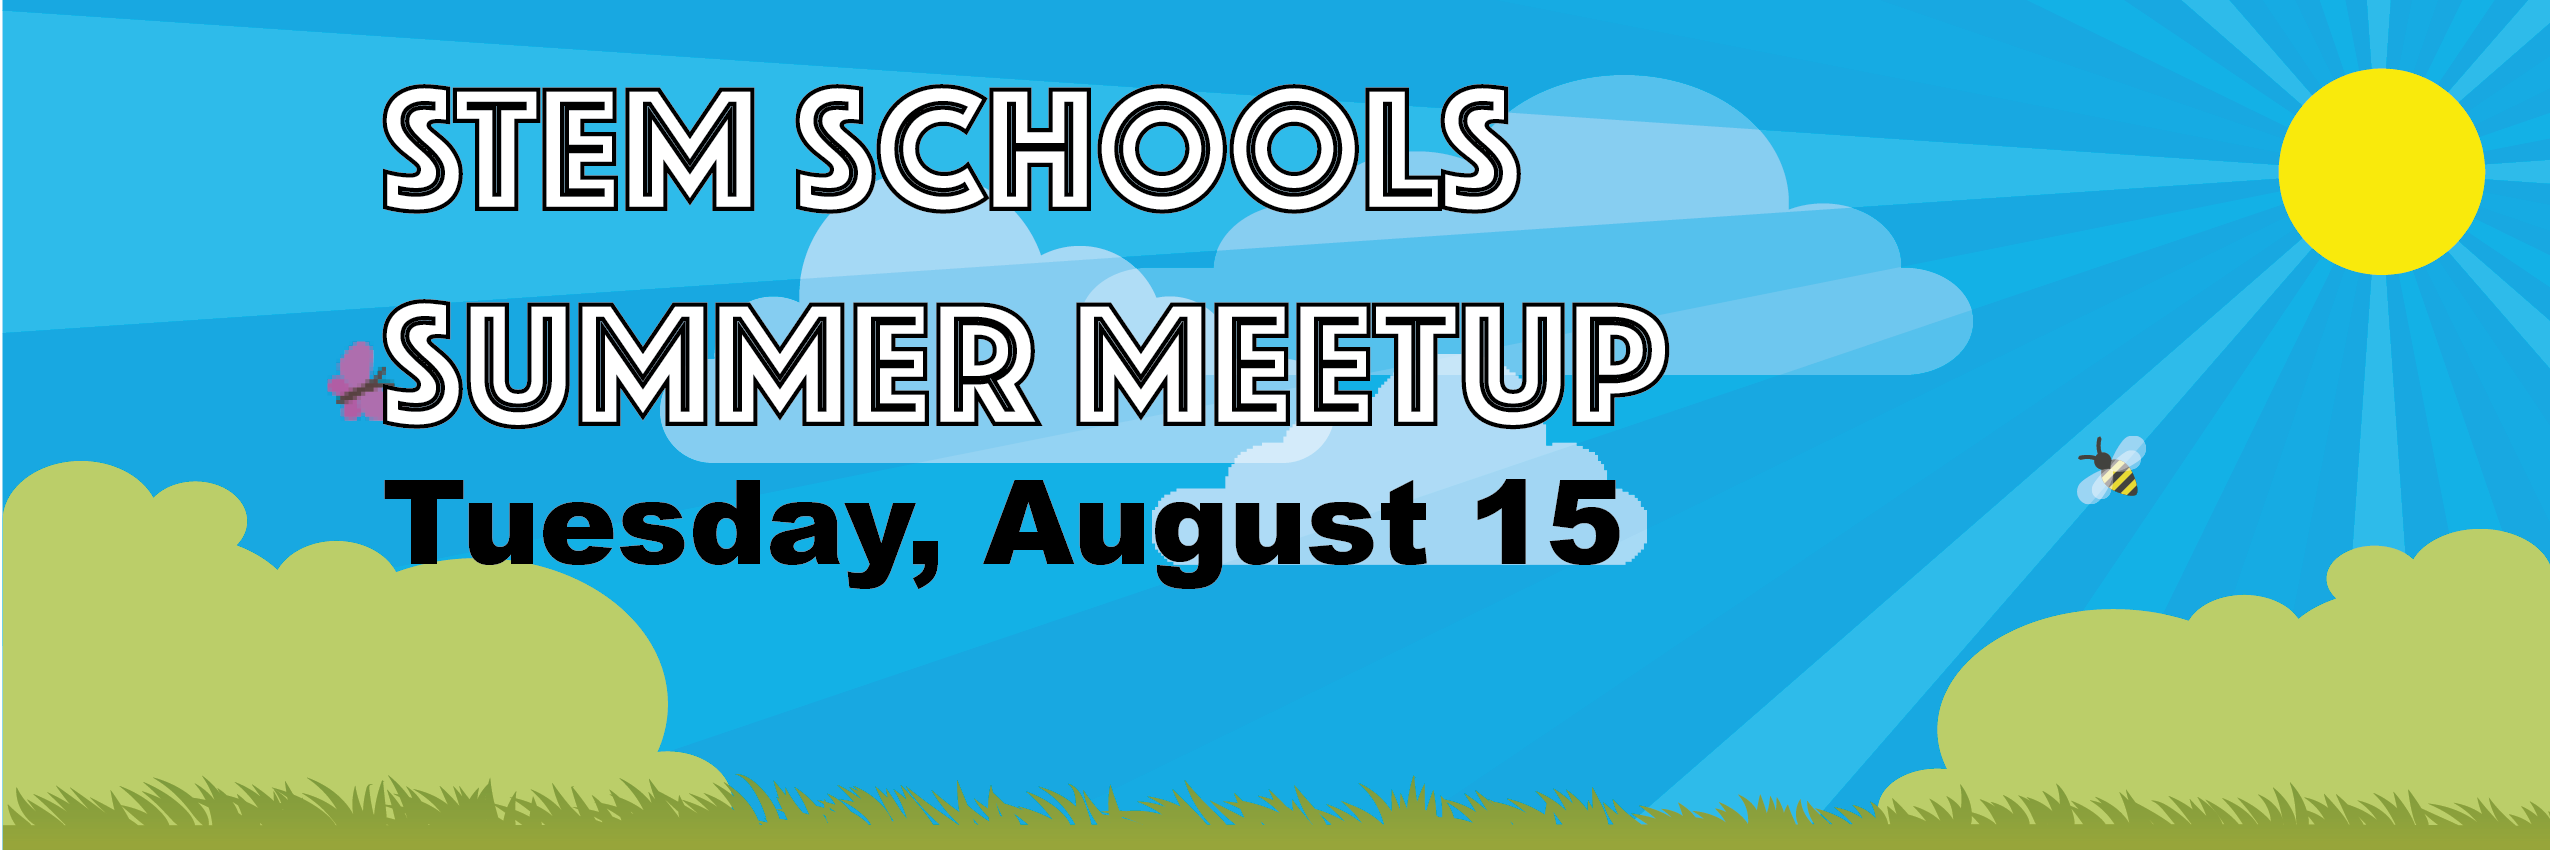 STEM Schools Summer Meetup August 15 2017